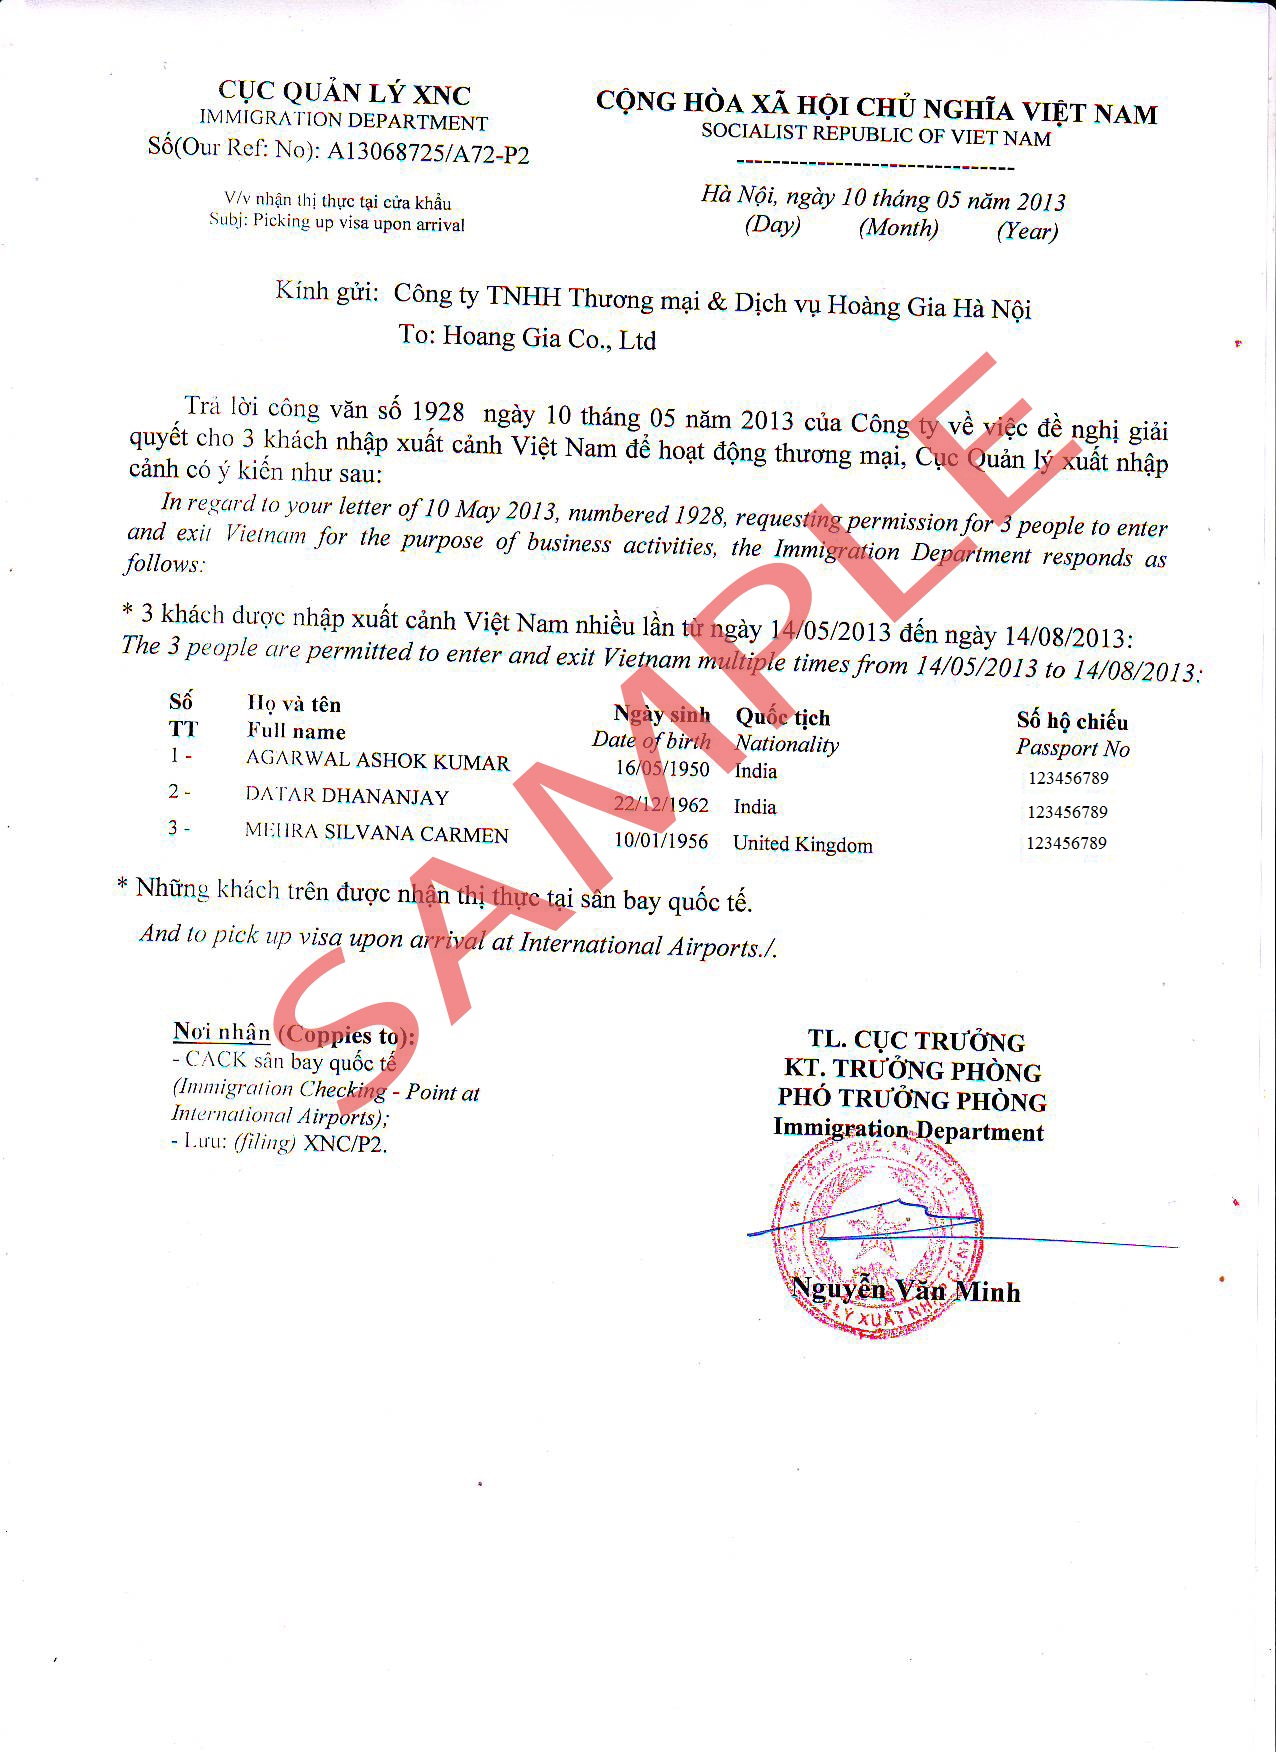 2. Carta de aprovação do visto para o Vietnã